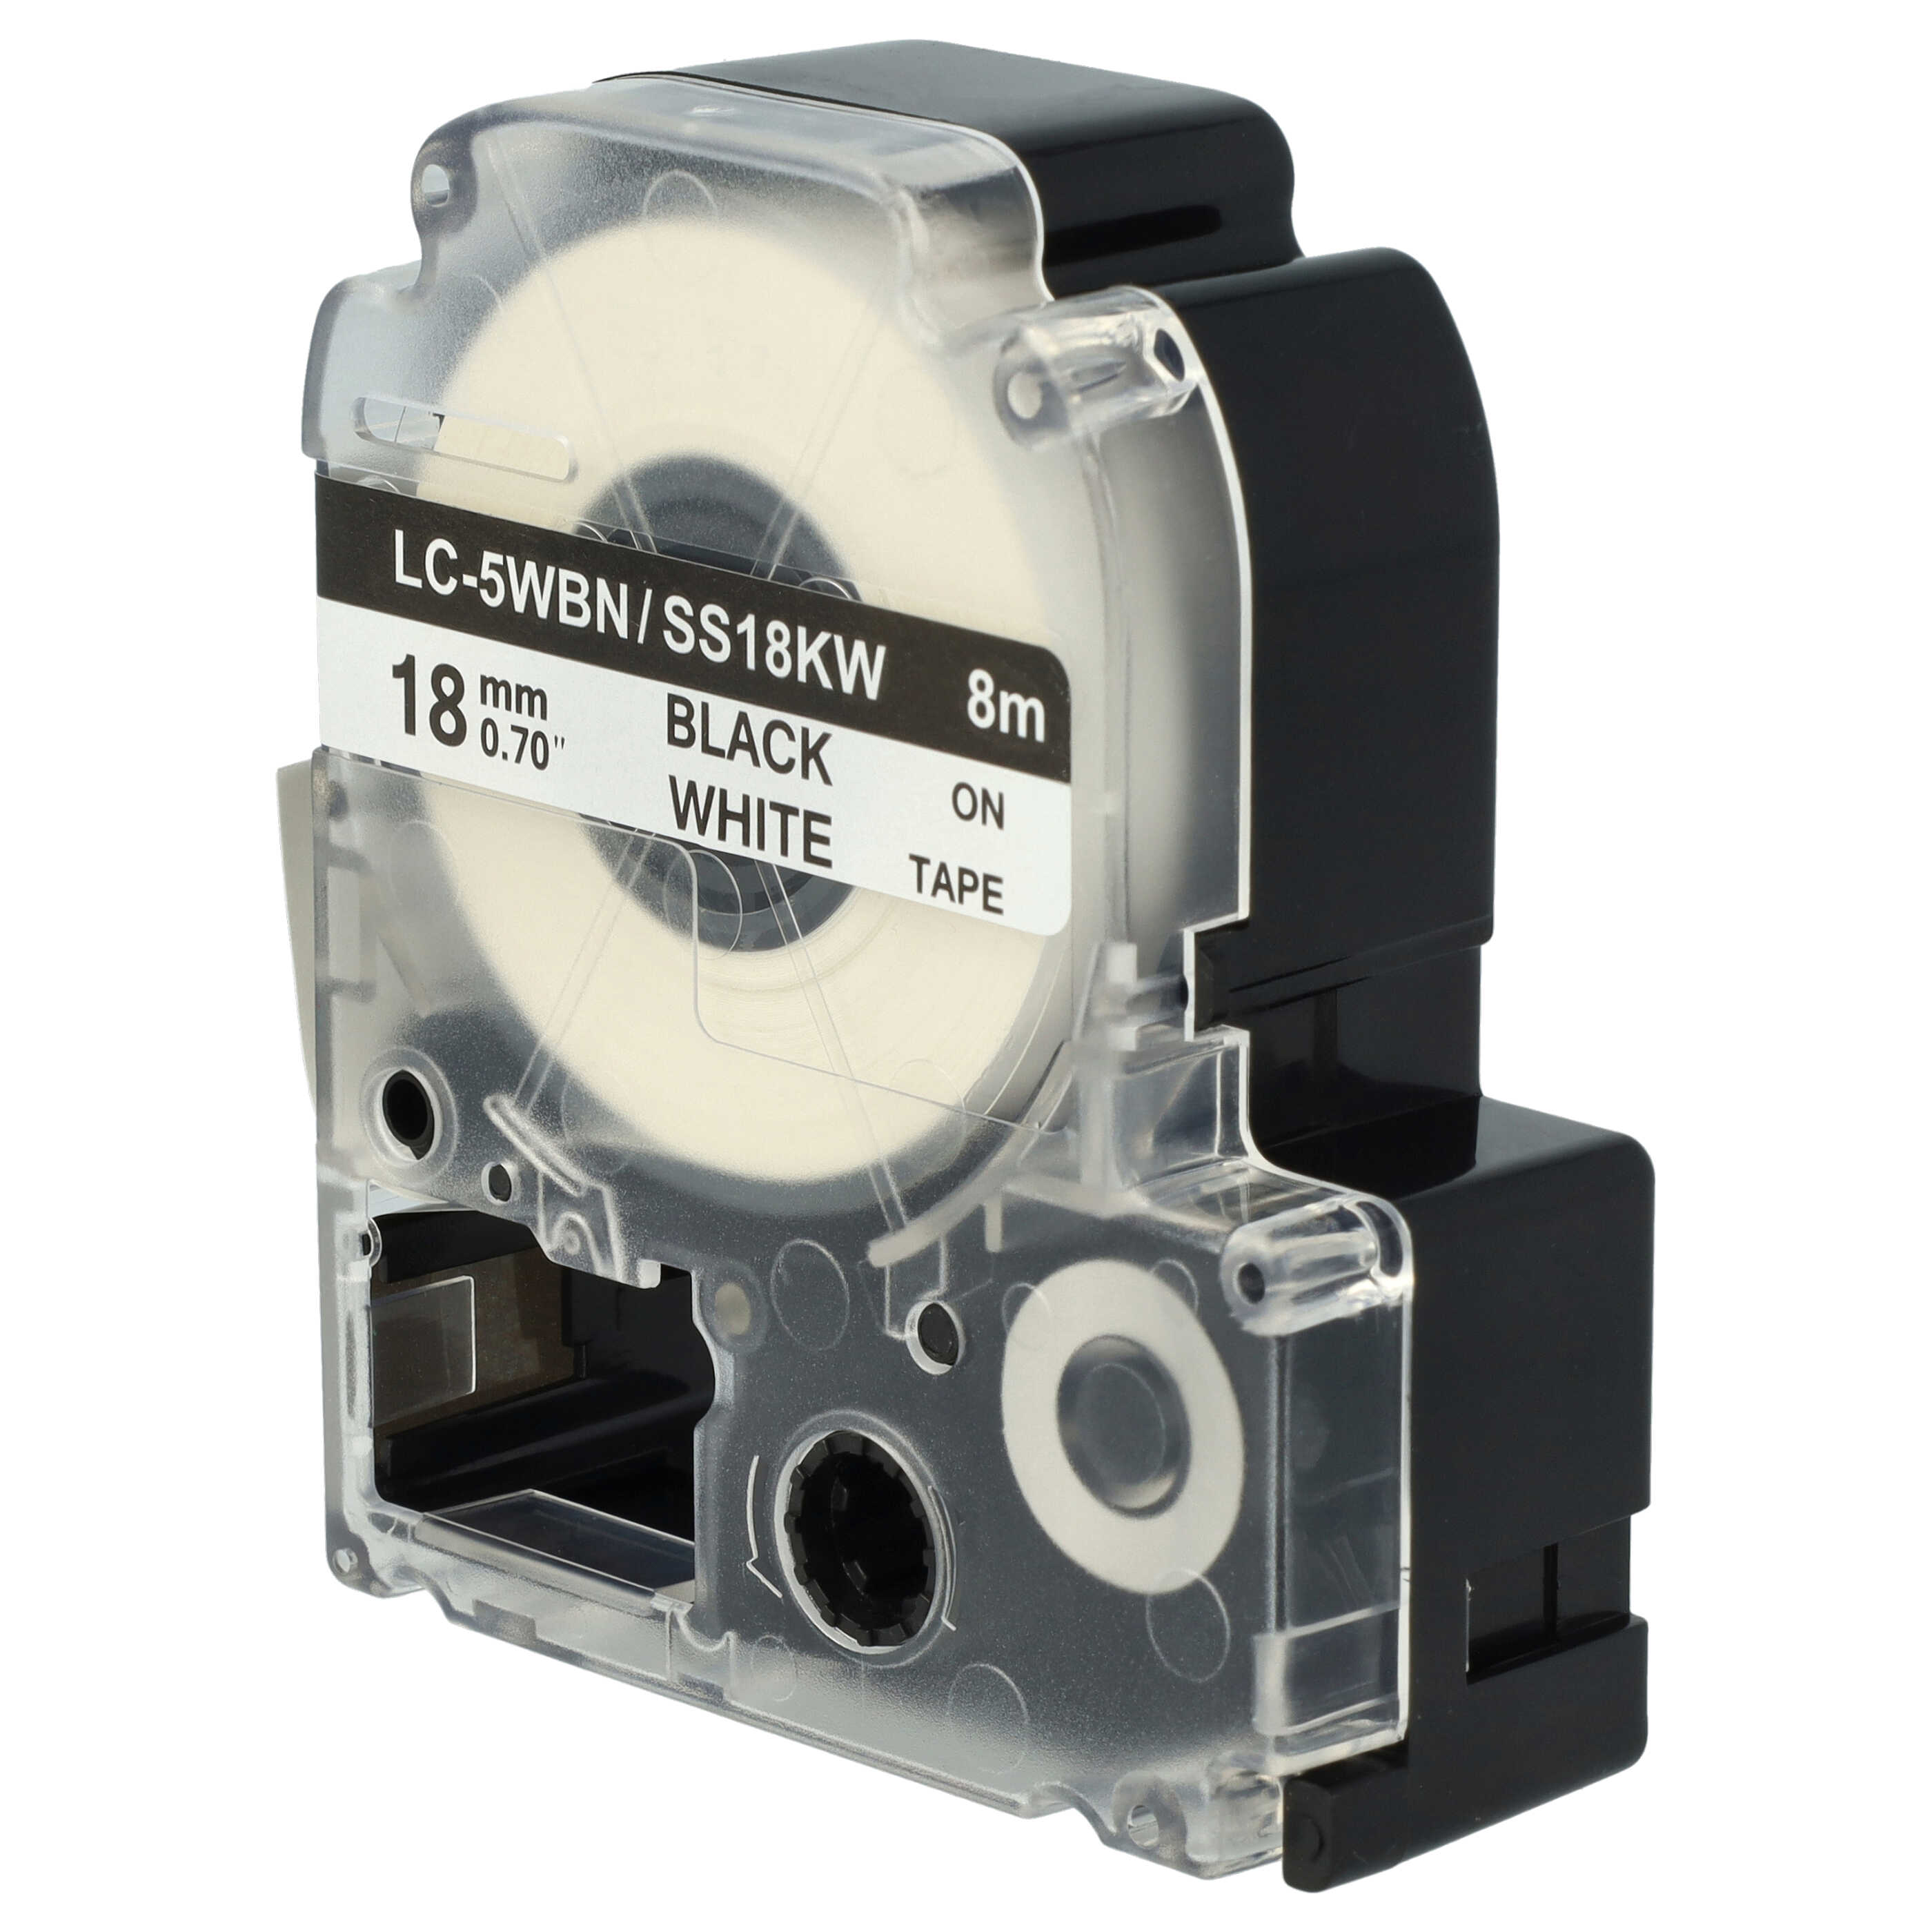 10x Cassetta nastro sostituisce Epson SS18KW, LC-5WBN per etichettatrice Epson 18mm nero su bianco